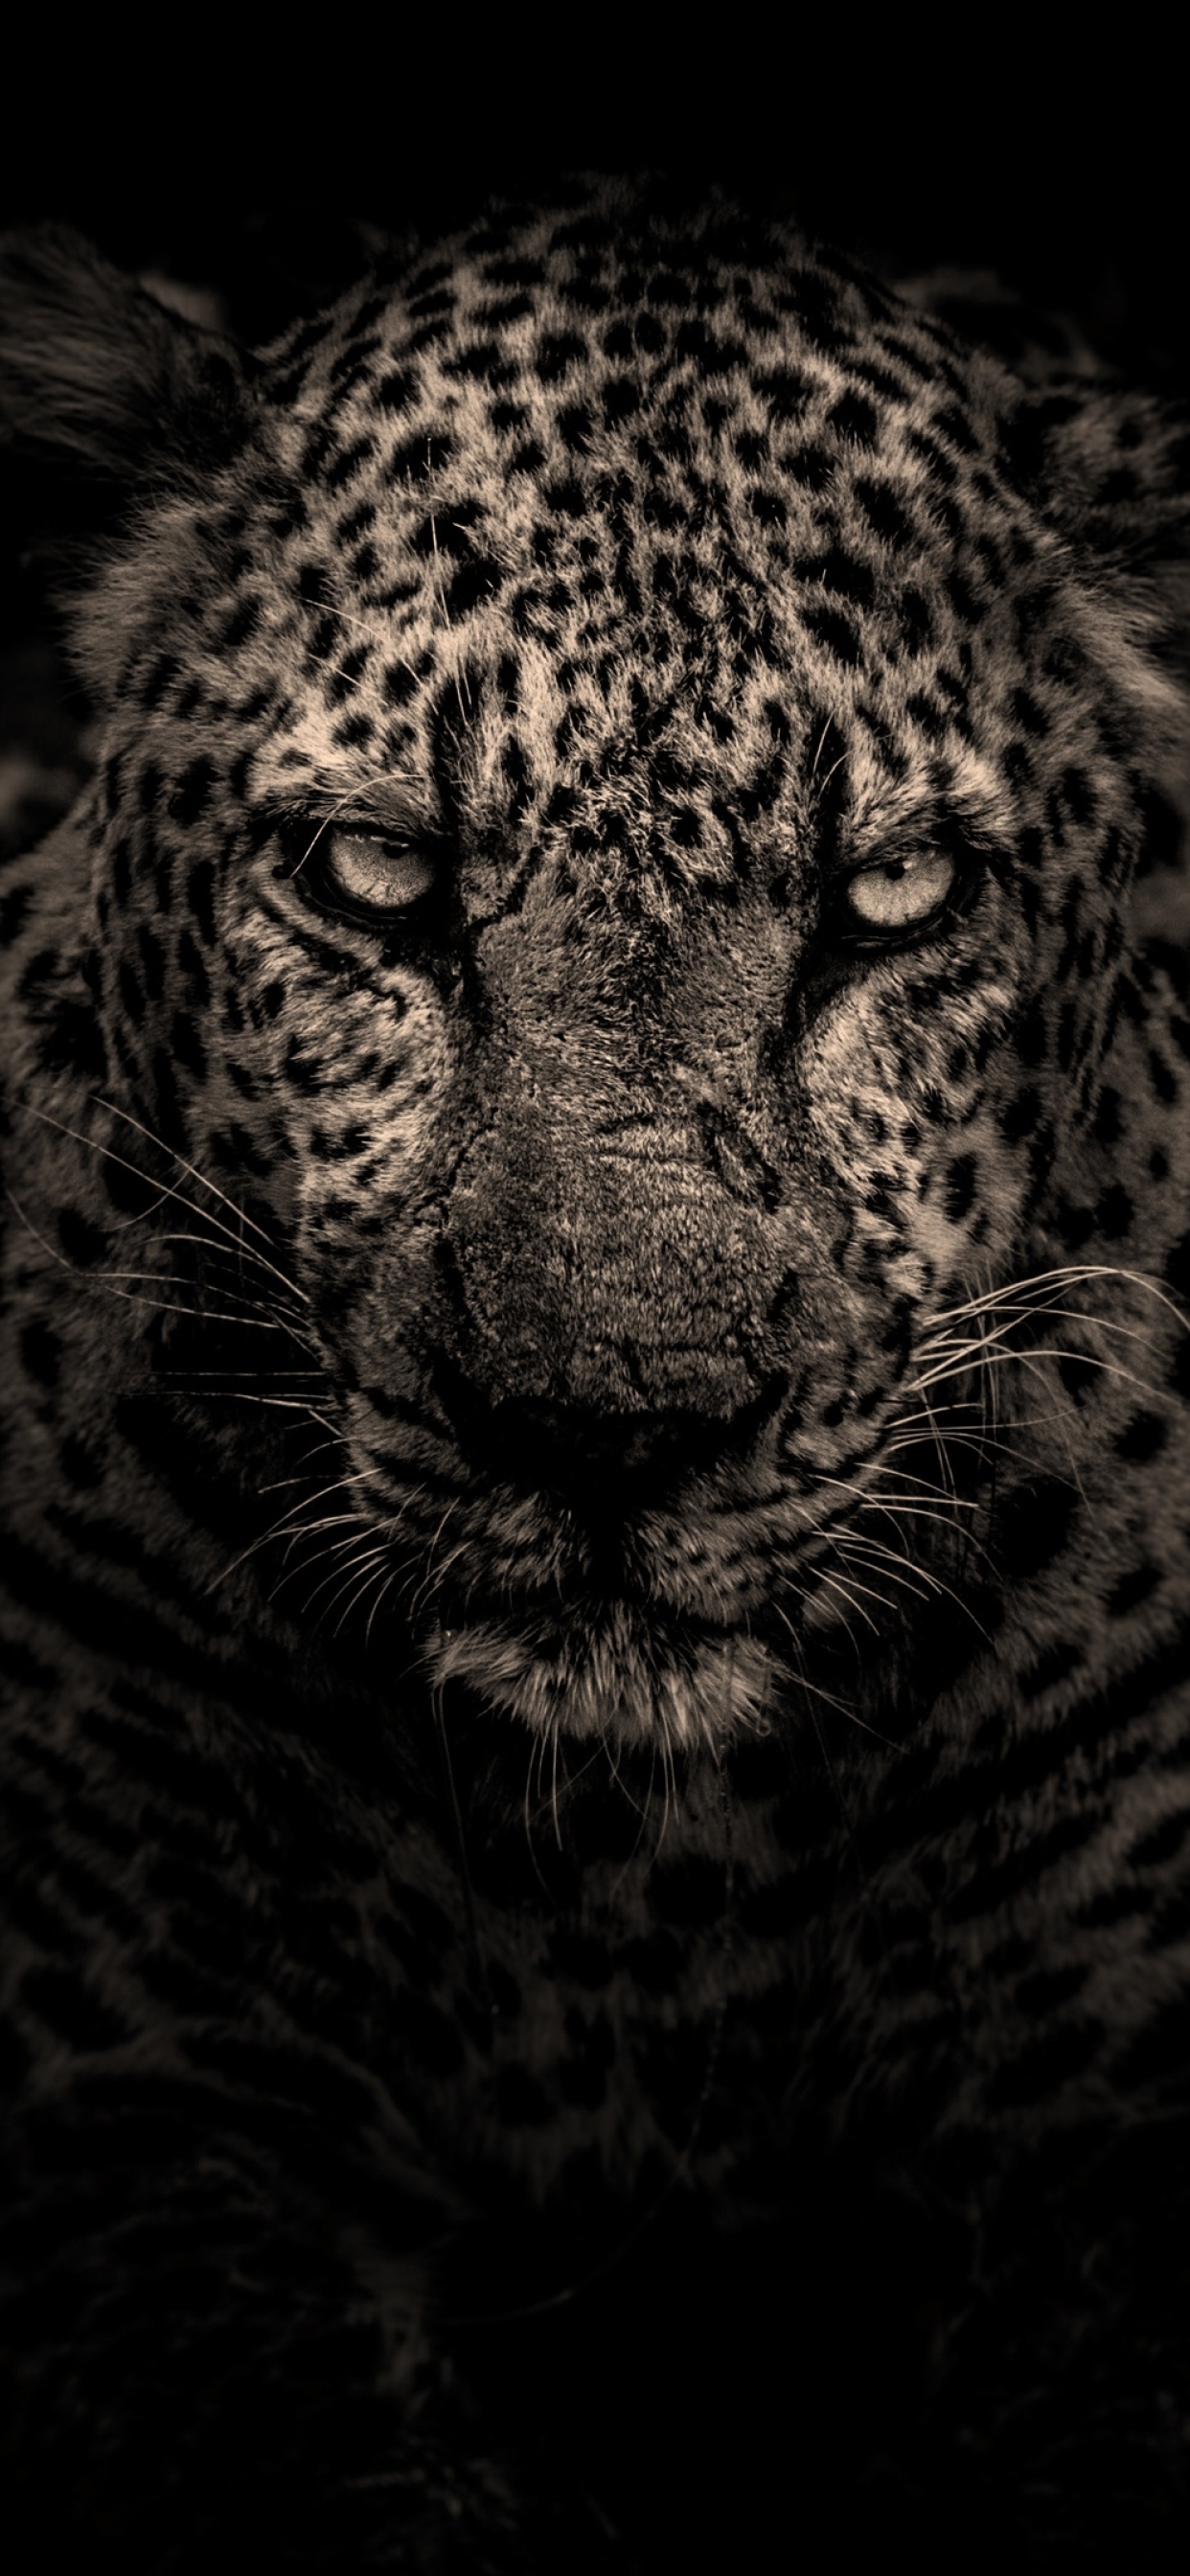 Leopard Cat iPhone Wallpaper